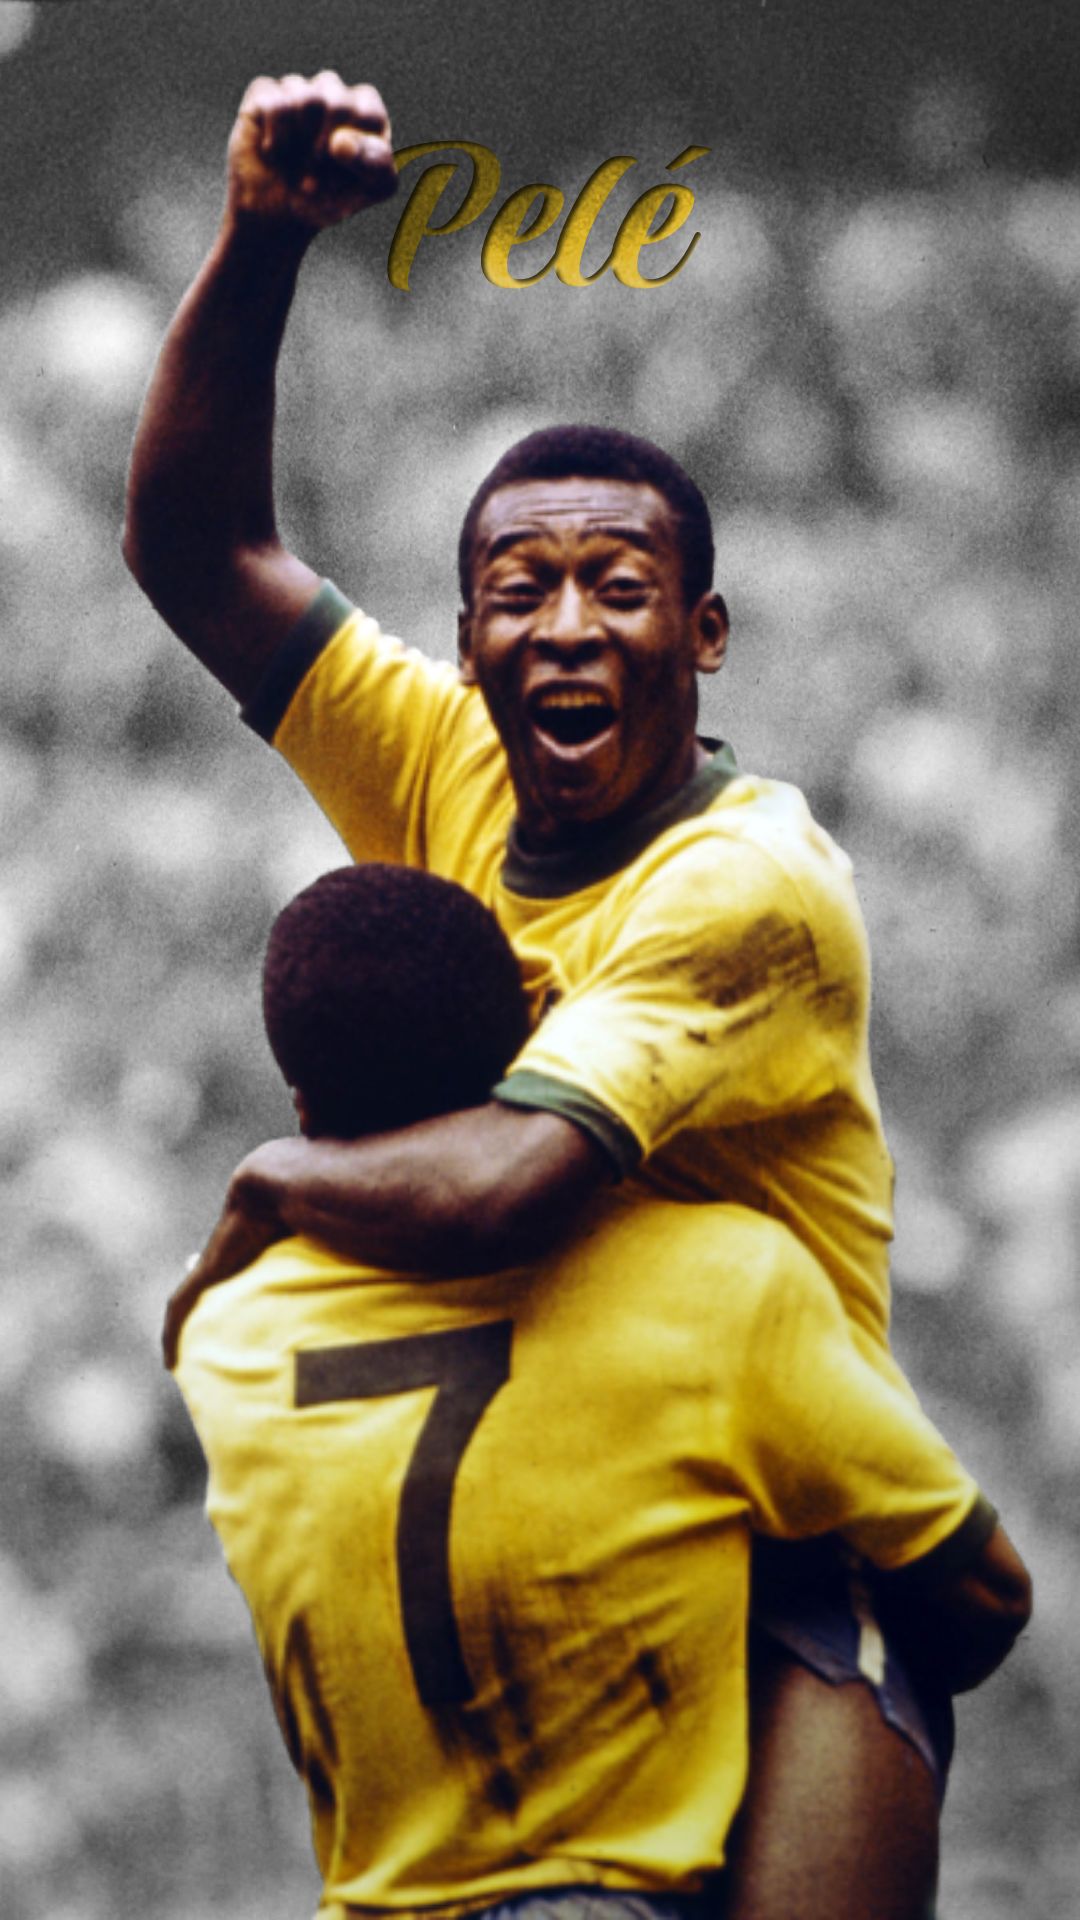 Minifigura del jugador de futbol Pelé